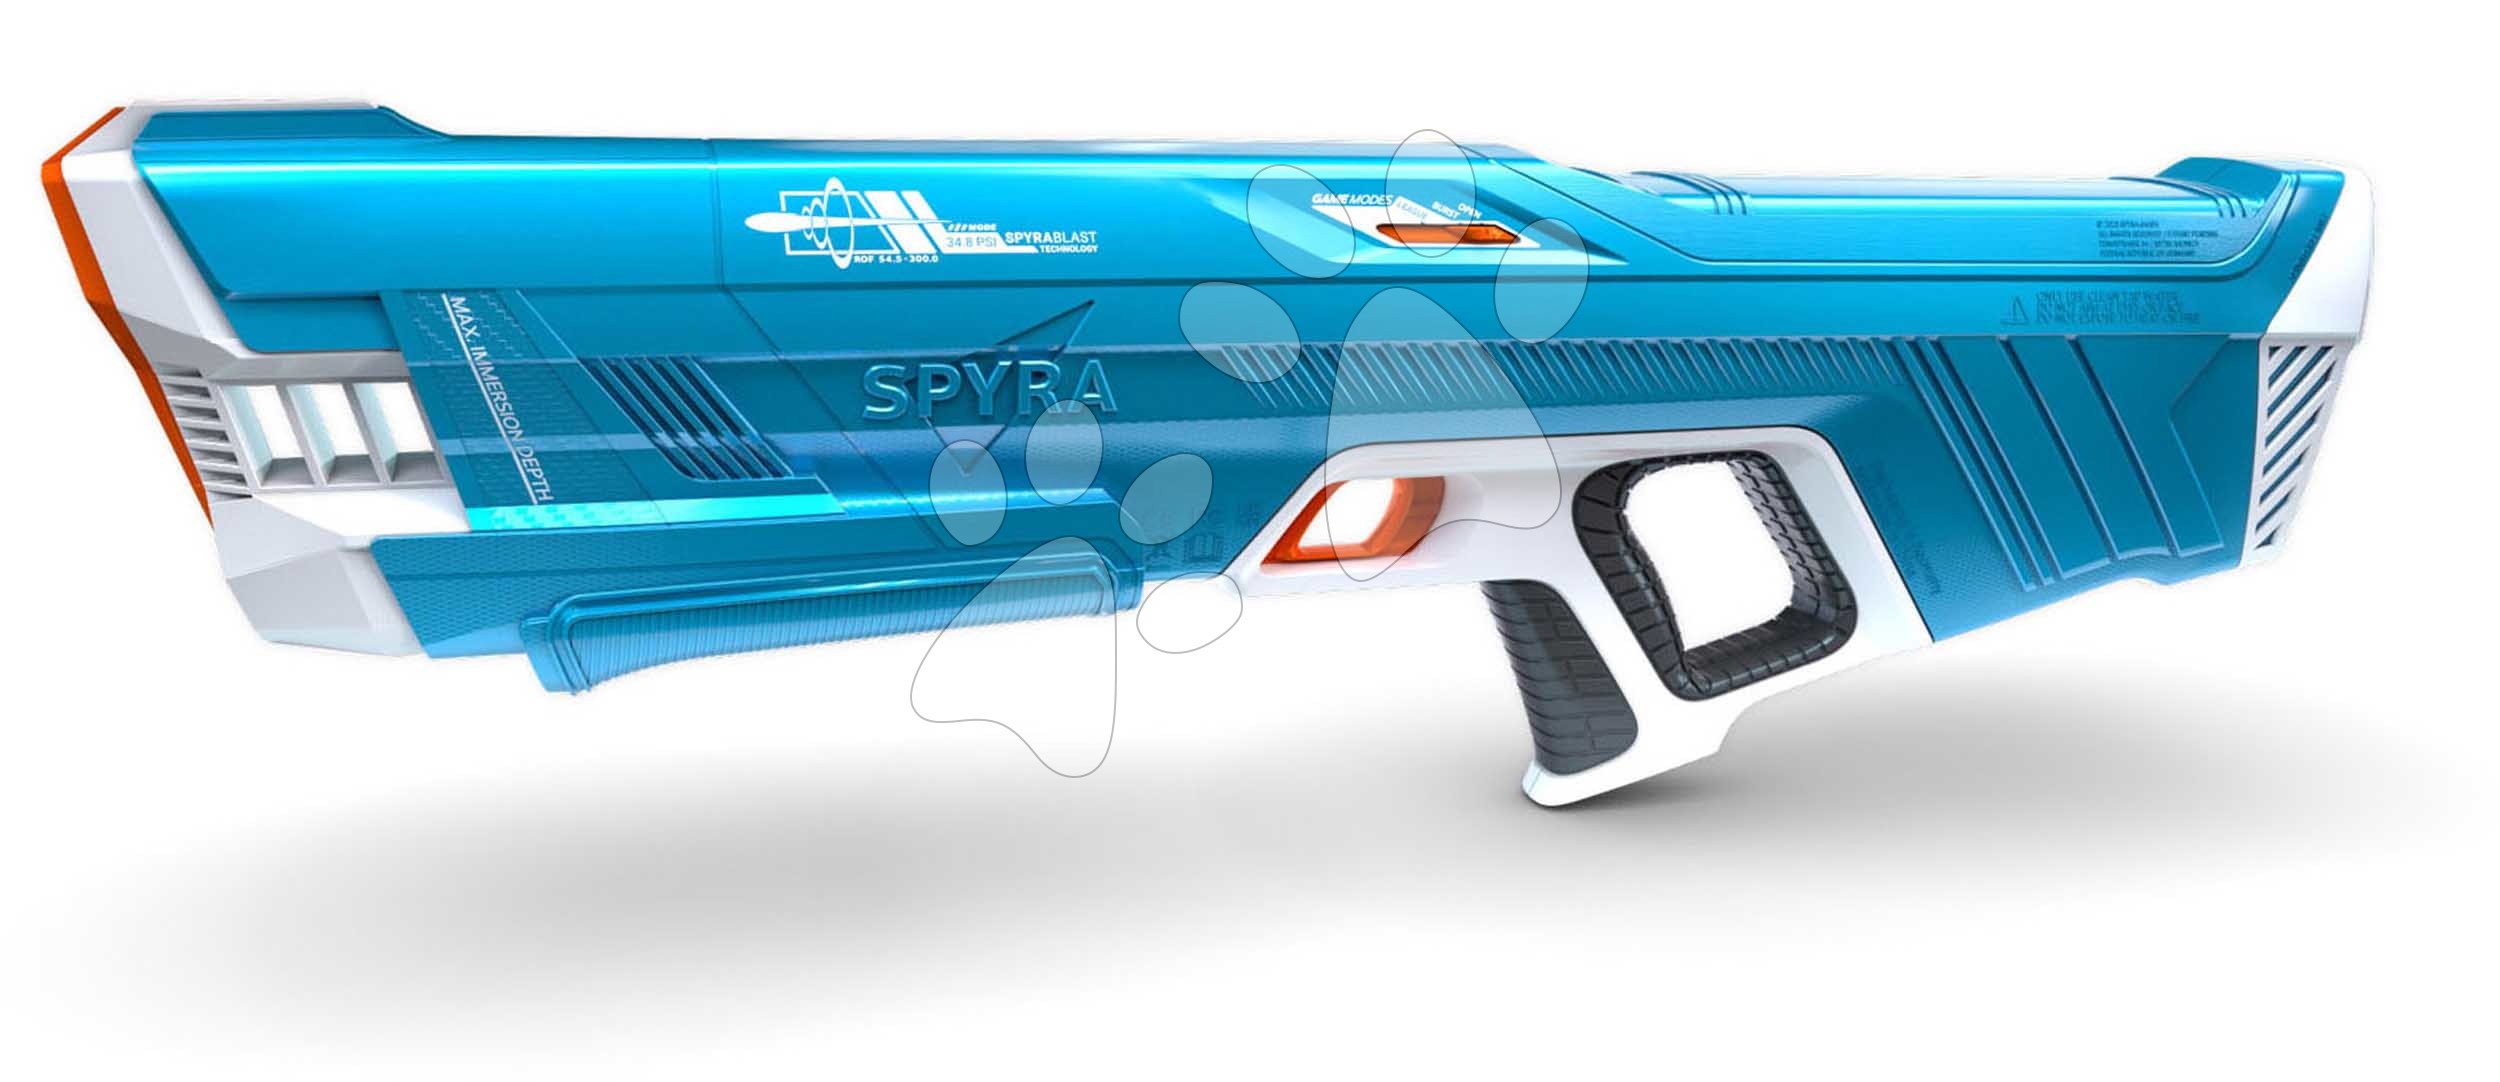 Vodní pistole plně elektronická s automatickým nabíjením vodou SpyraThree Blue Spyra s elektronickým digitálním displejem a 3 režimy střelby s dostřelem 15 metrů modrá od 14 let